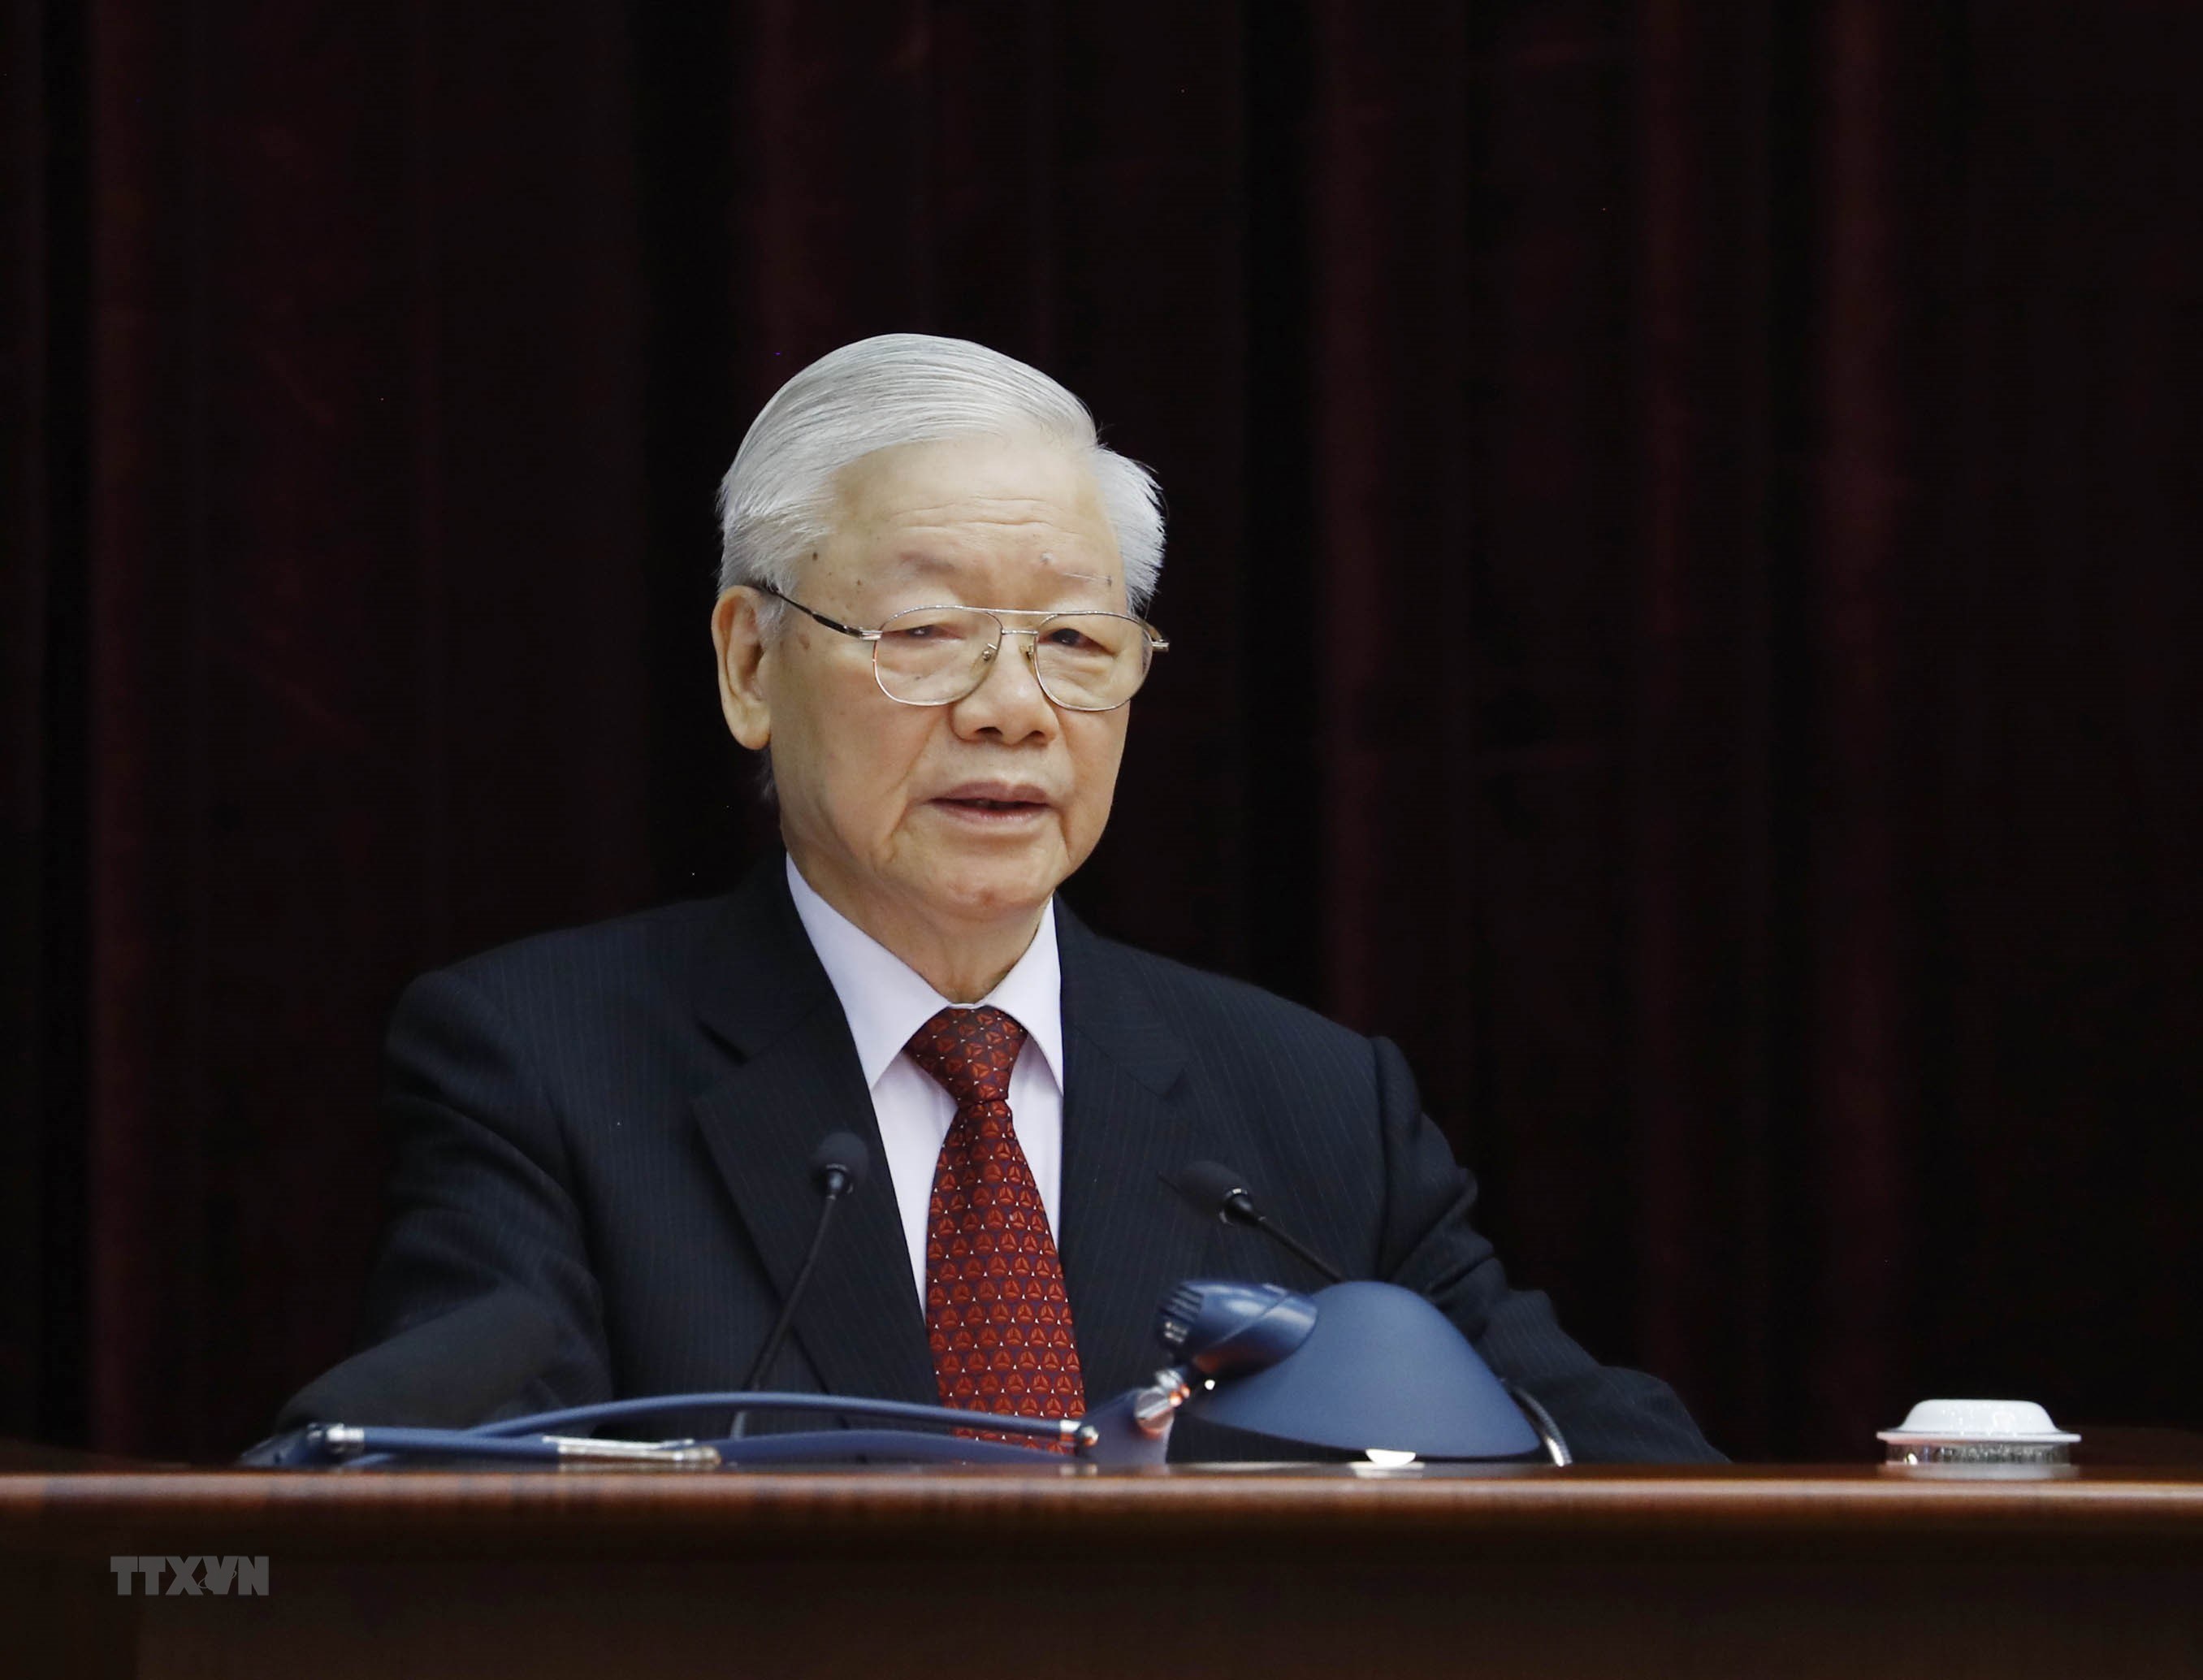 Tổng Bí thư Nguyễn Phú Trọng phát biểu khai mạc Hội nghị